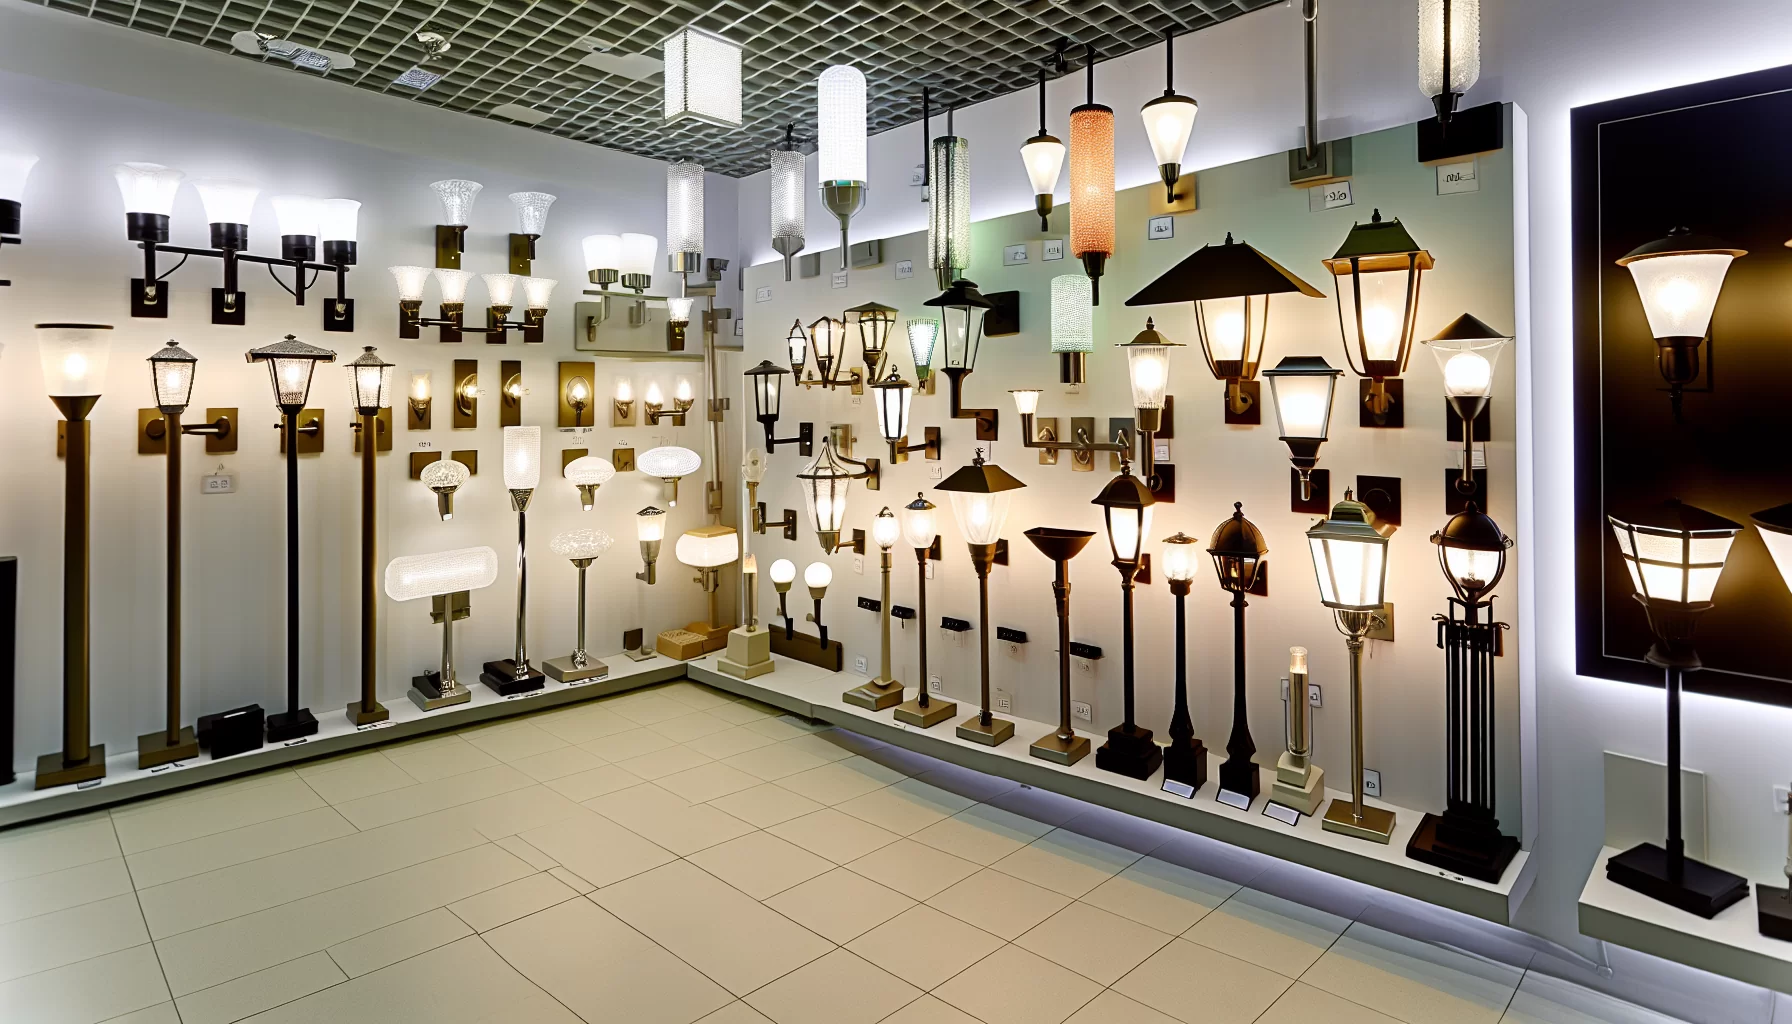 Outdoor light fixtures displayed in a showroom